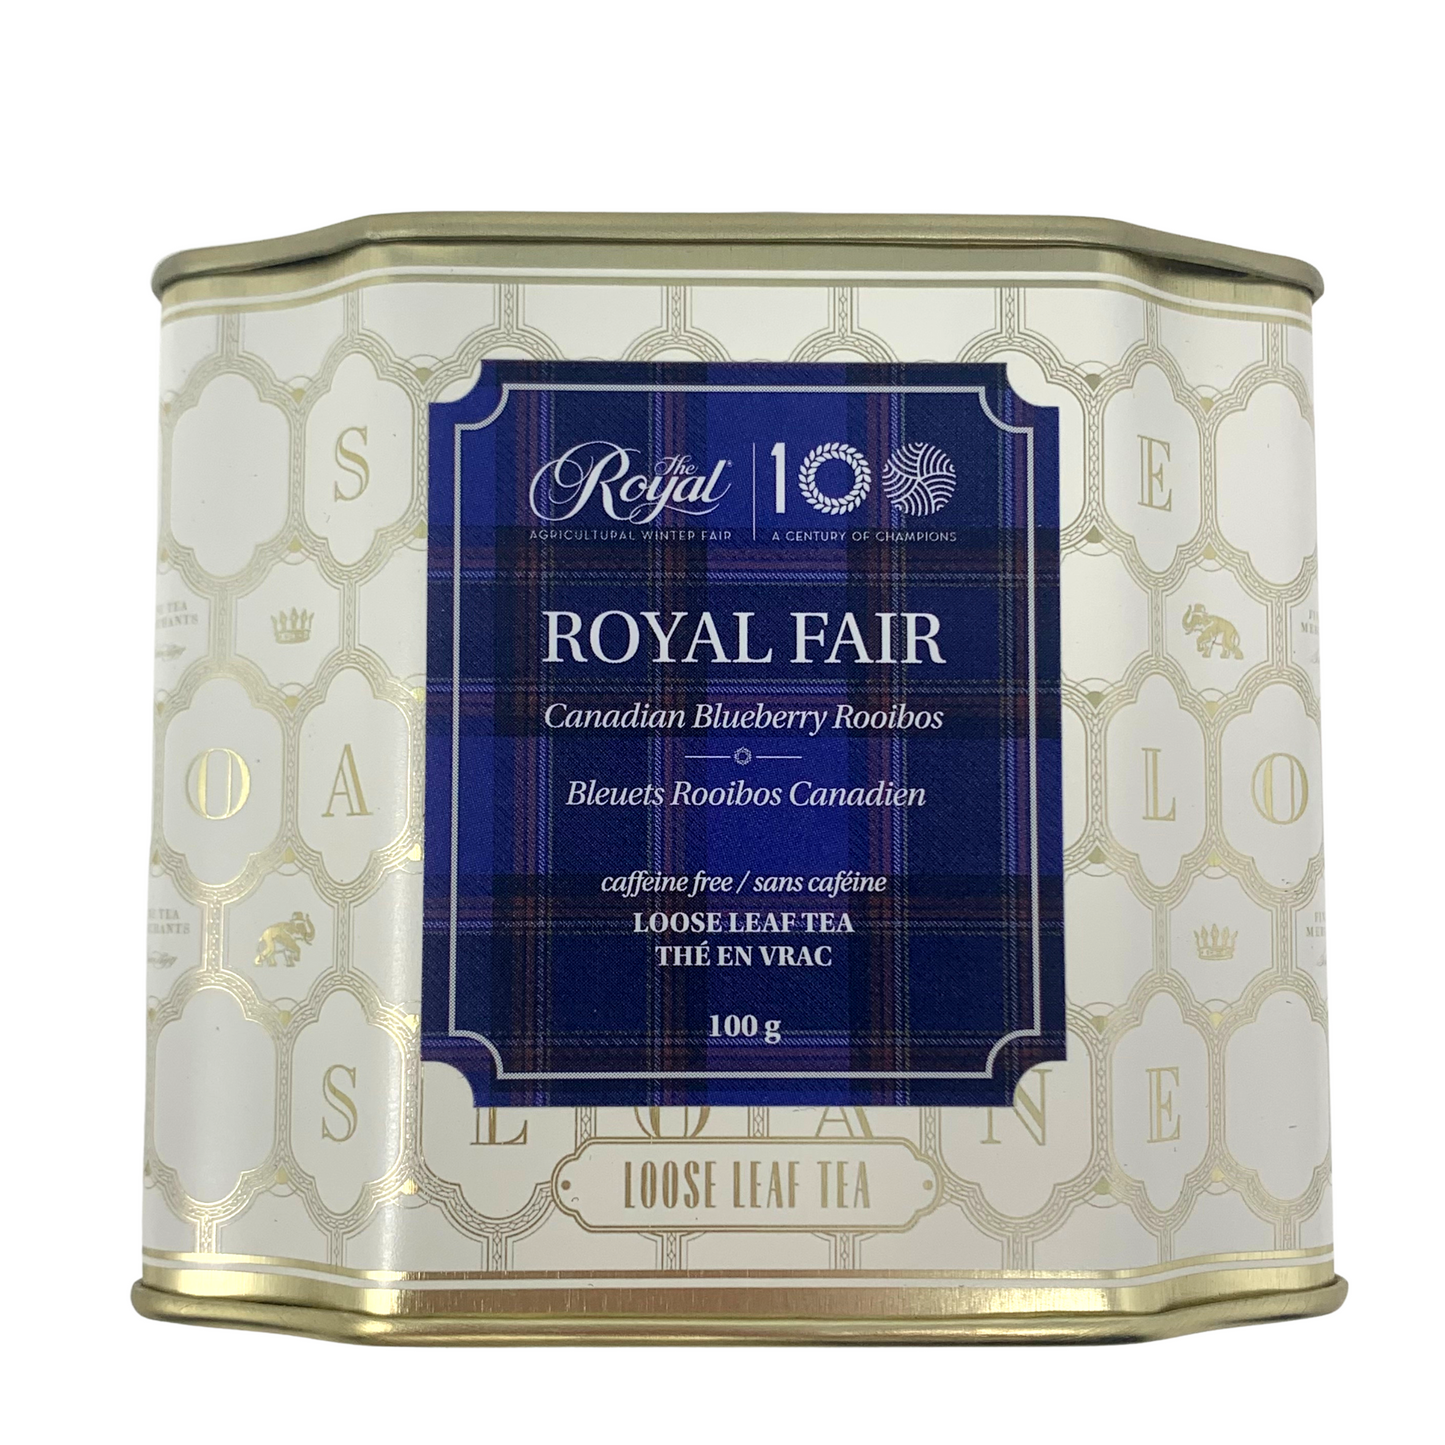 Royal Fair Canadian Blueberry Rooibos Tea